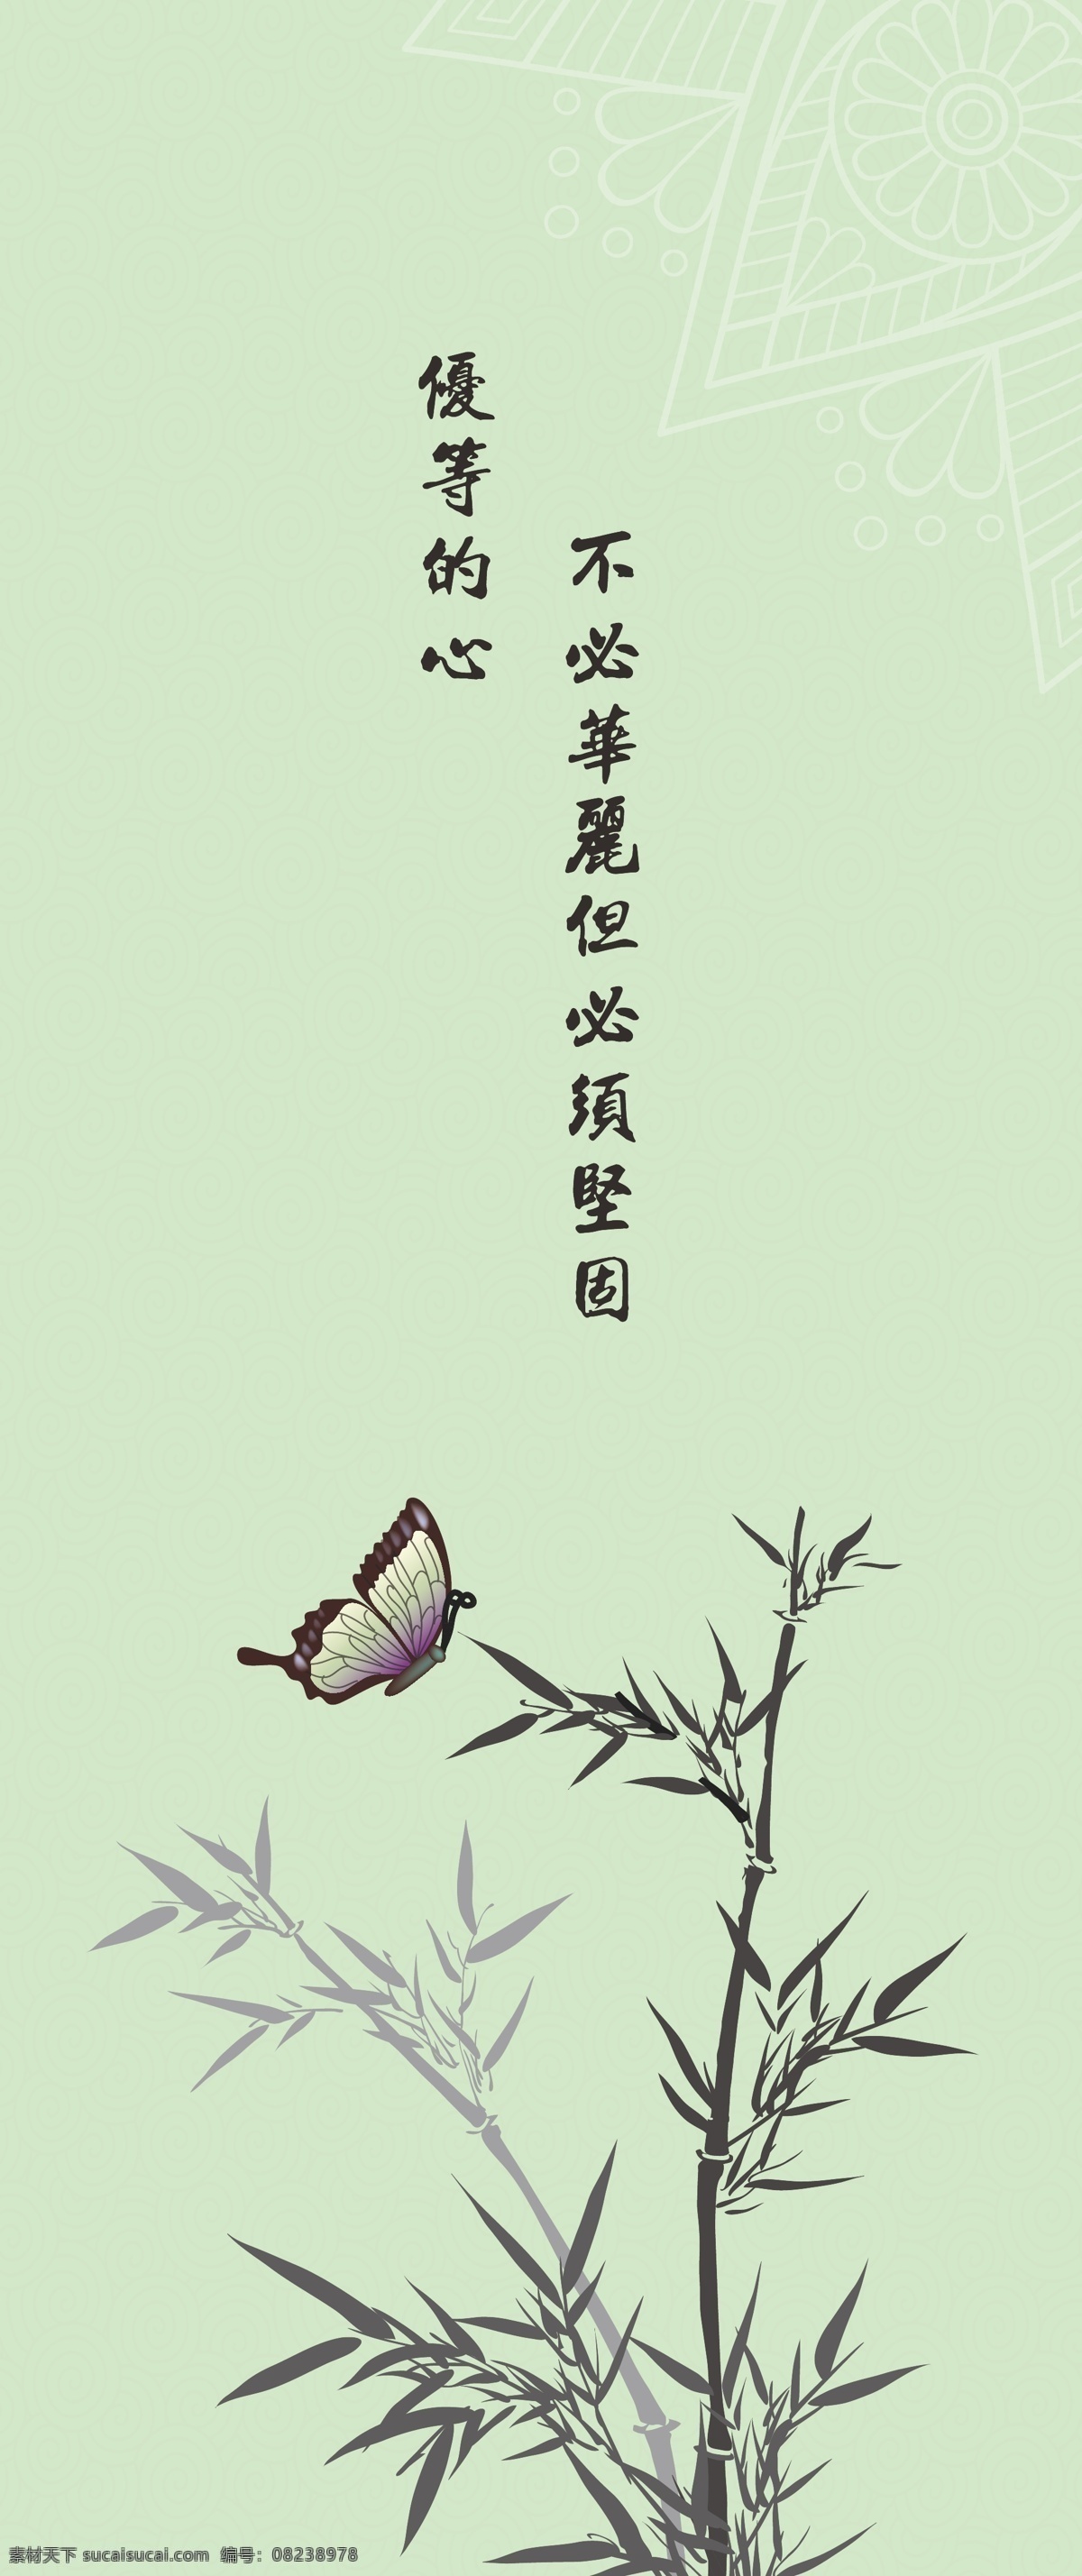 创意书签 书签 标签 水墨 向日葵 中国风